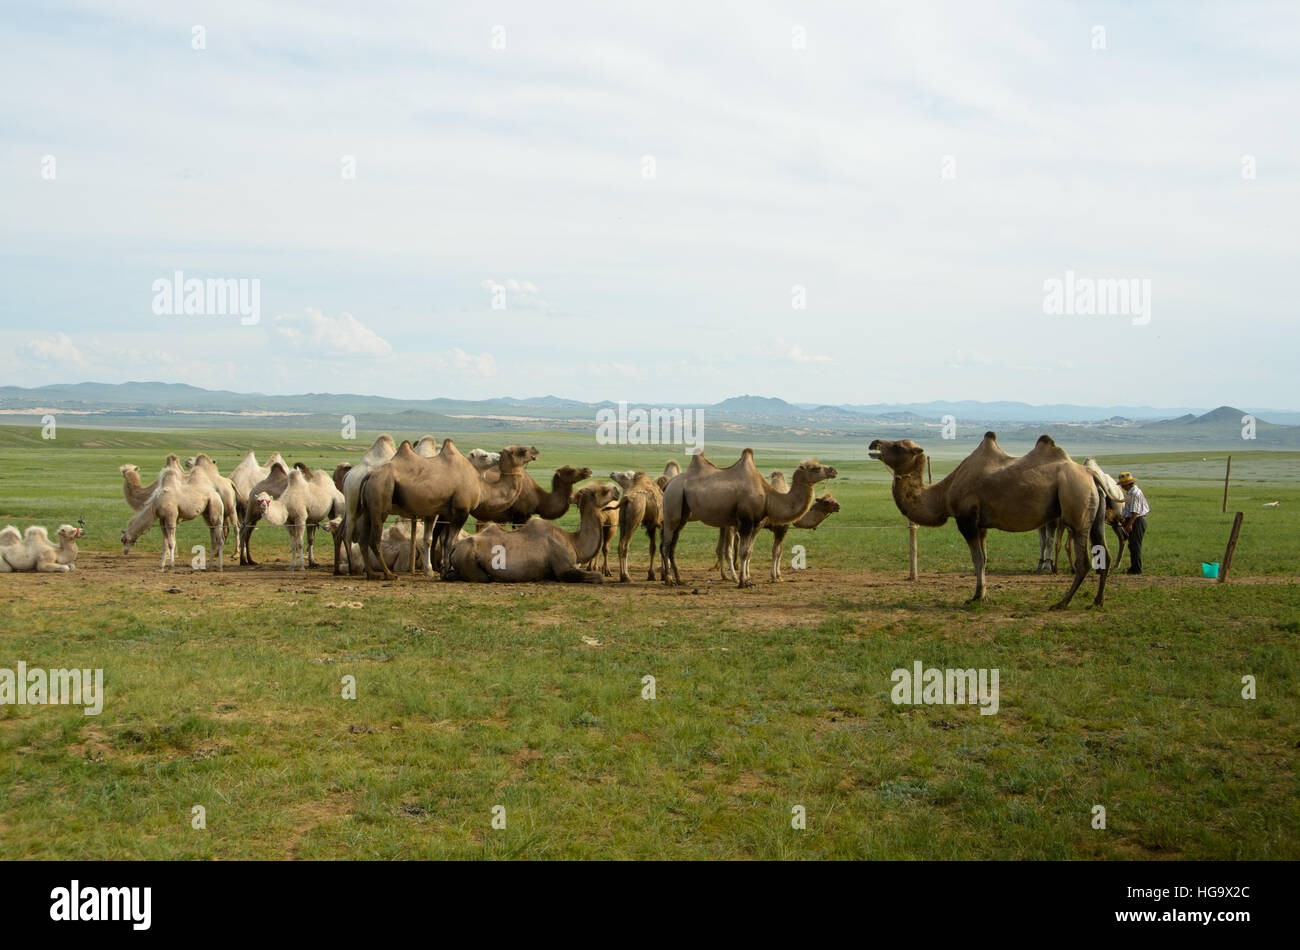 Camellos domésticos pueden verse en el interior de Mongolia. Foto de stock